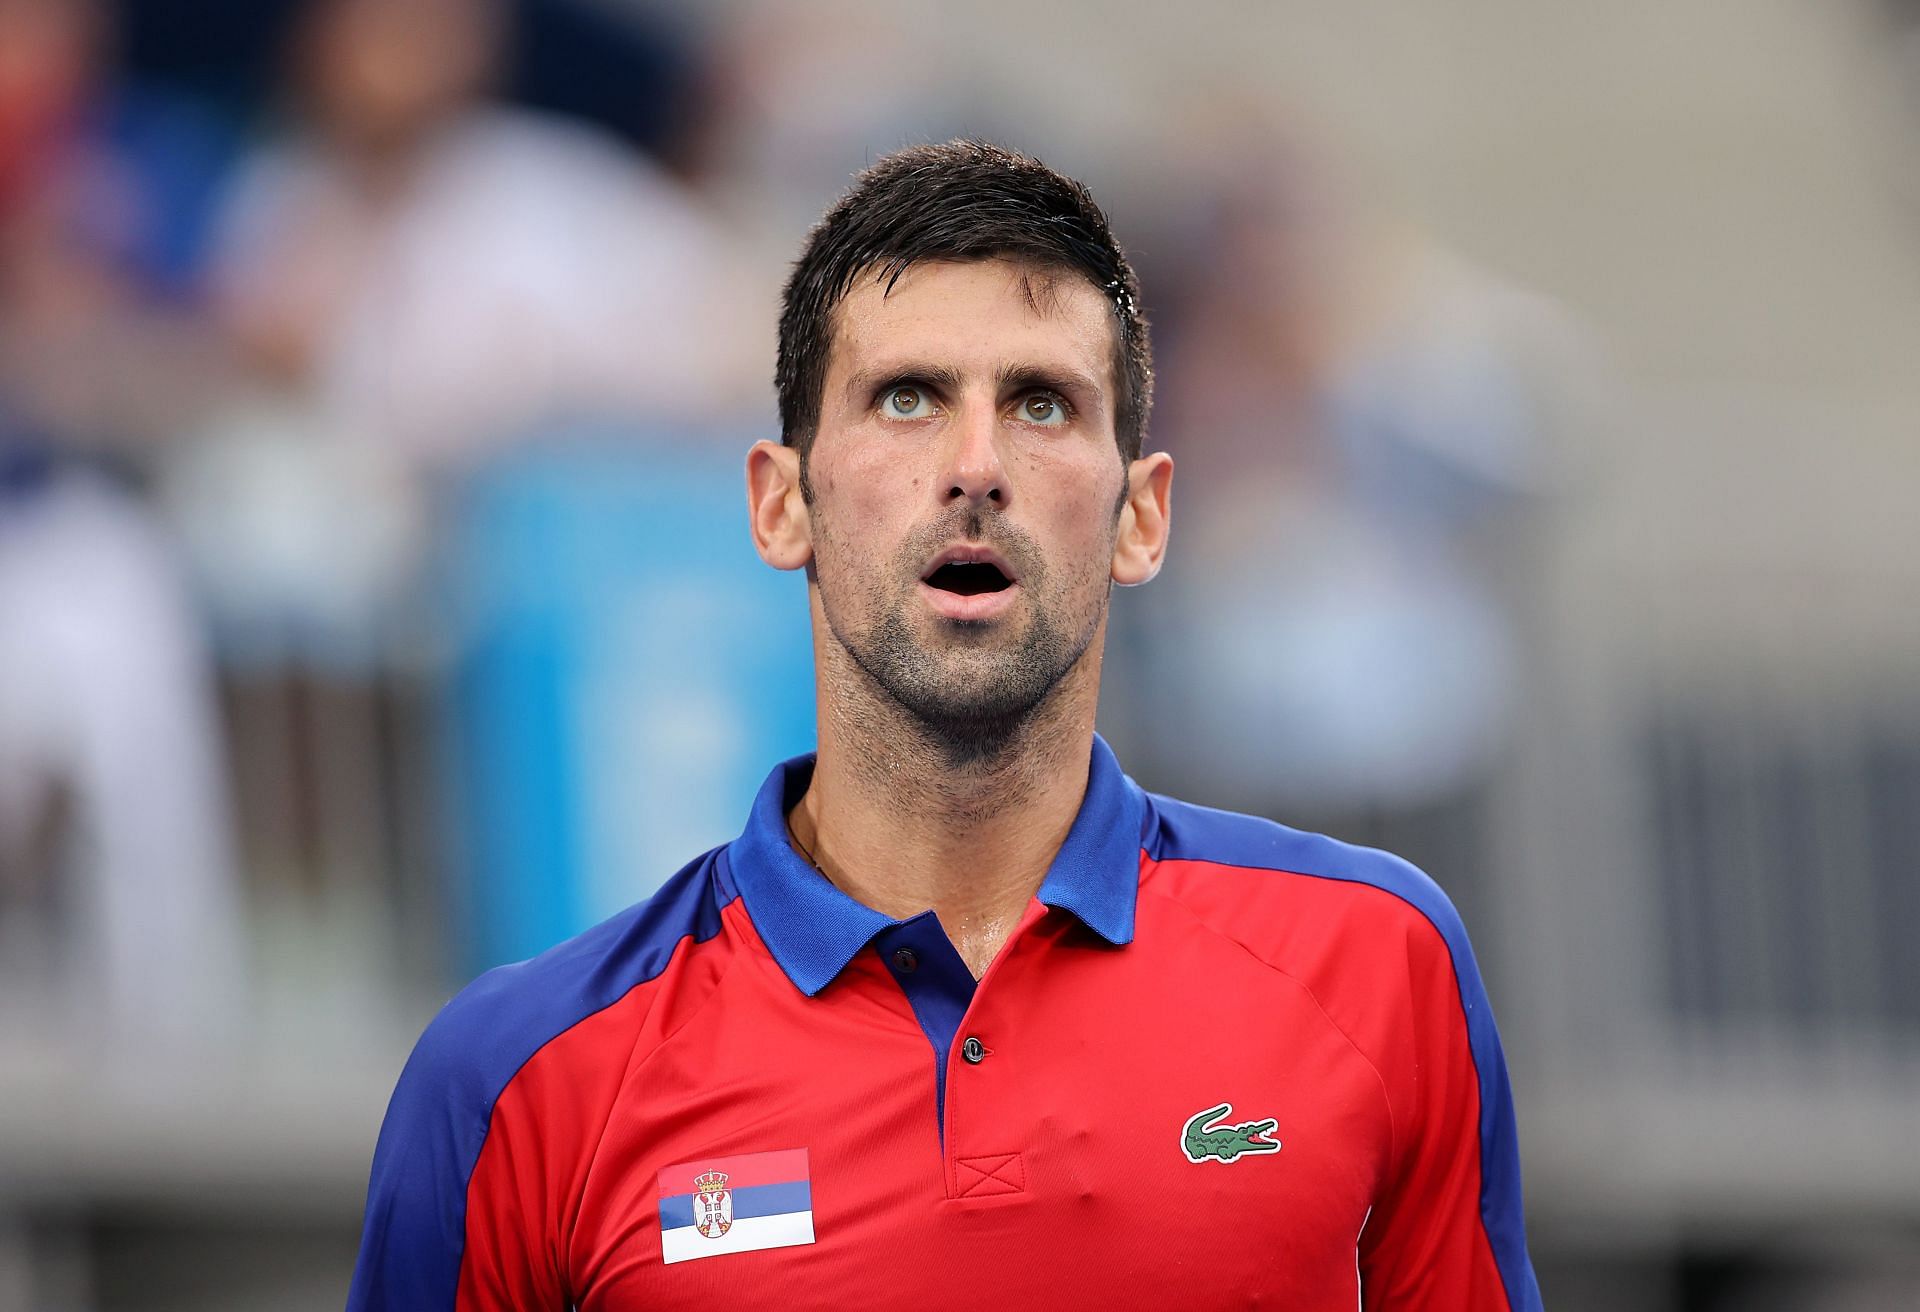 Novak Djokovic has been released from detention.